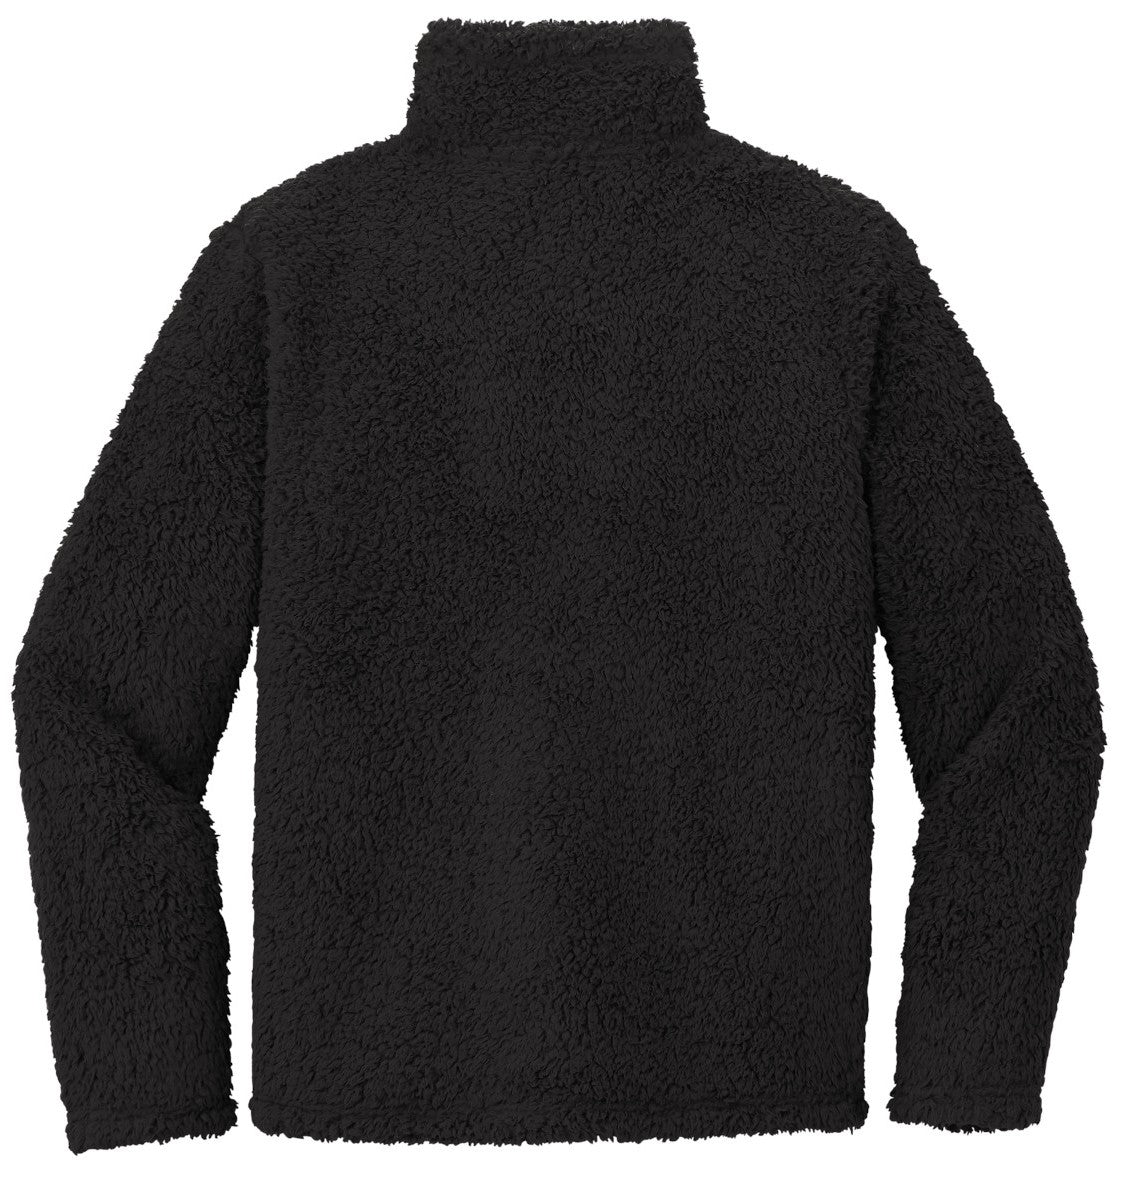 Deep Black sherpa fleece with 1/4 zipper by Flying R Ranchwear